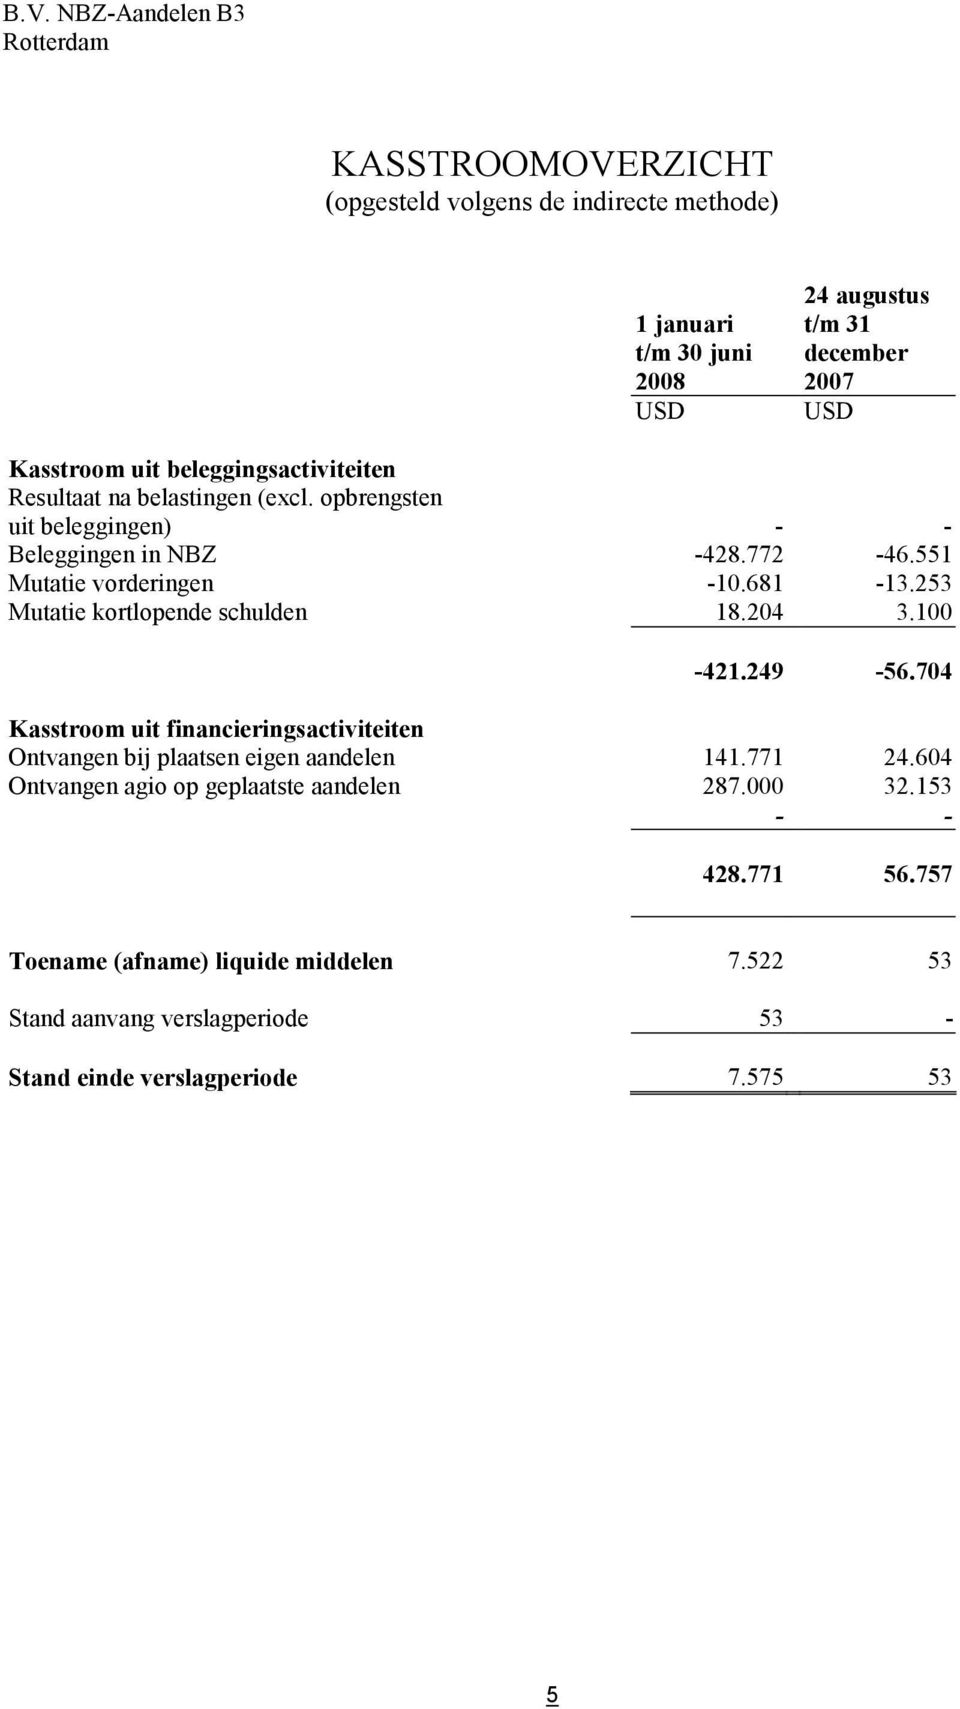 253 Mutatie kortlopende schulden 18.204 3.100-421.249-56.704 Kasstroom uit financieringsactiviteiten Ontvangen bij plaatsen eigen aandelen 141.771 24.